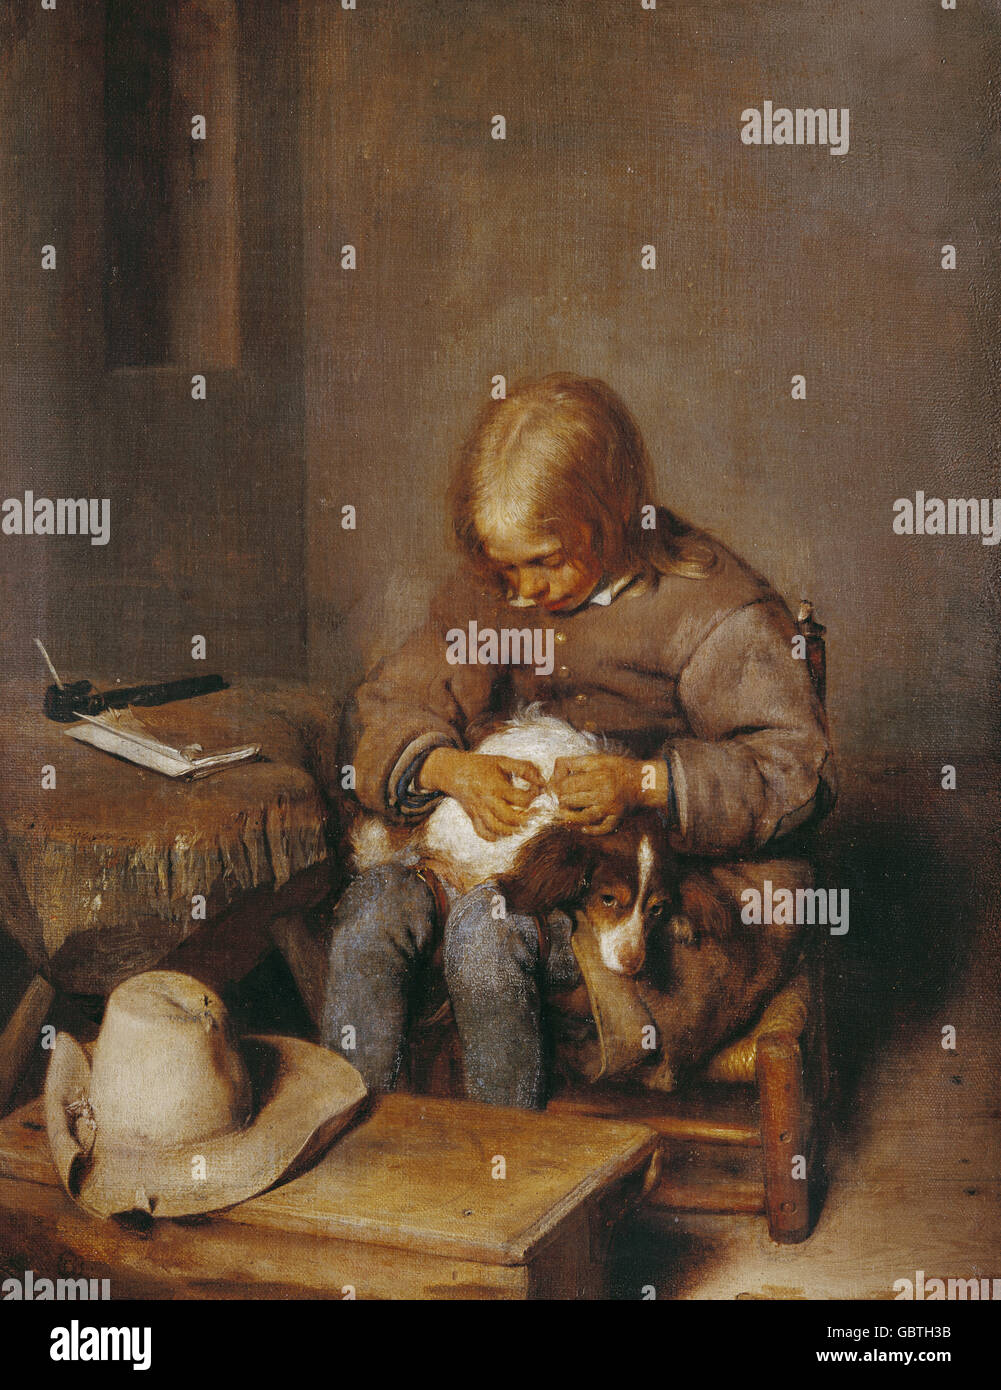 Bildende Kunst, Terborch, Gerard (1617-1681), Malerei, "Boy zu befreien, seinen Hund Flöhe", ca. 1655, Öl auf Leinwand, 34 x 27 cm, Alte Pinakothek, München, Stockfoto